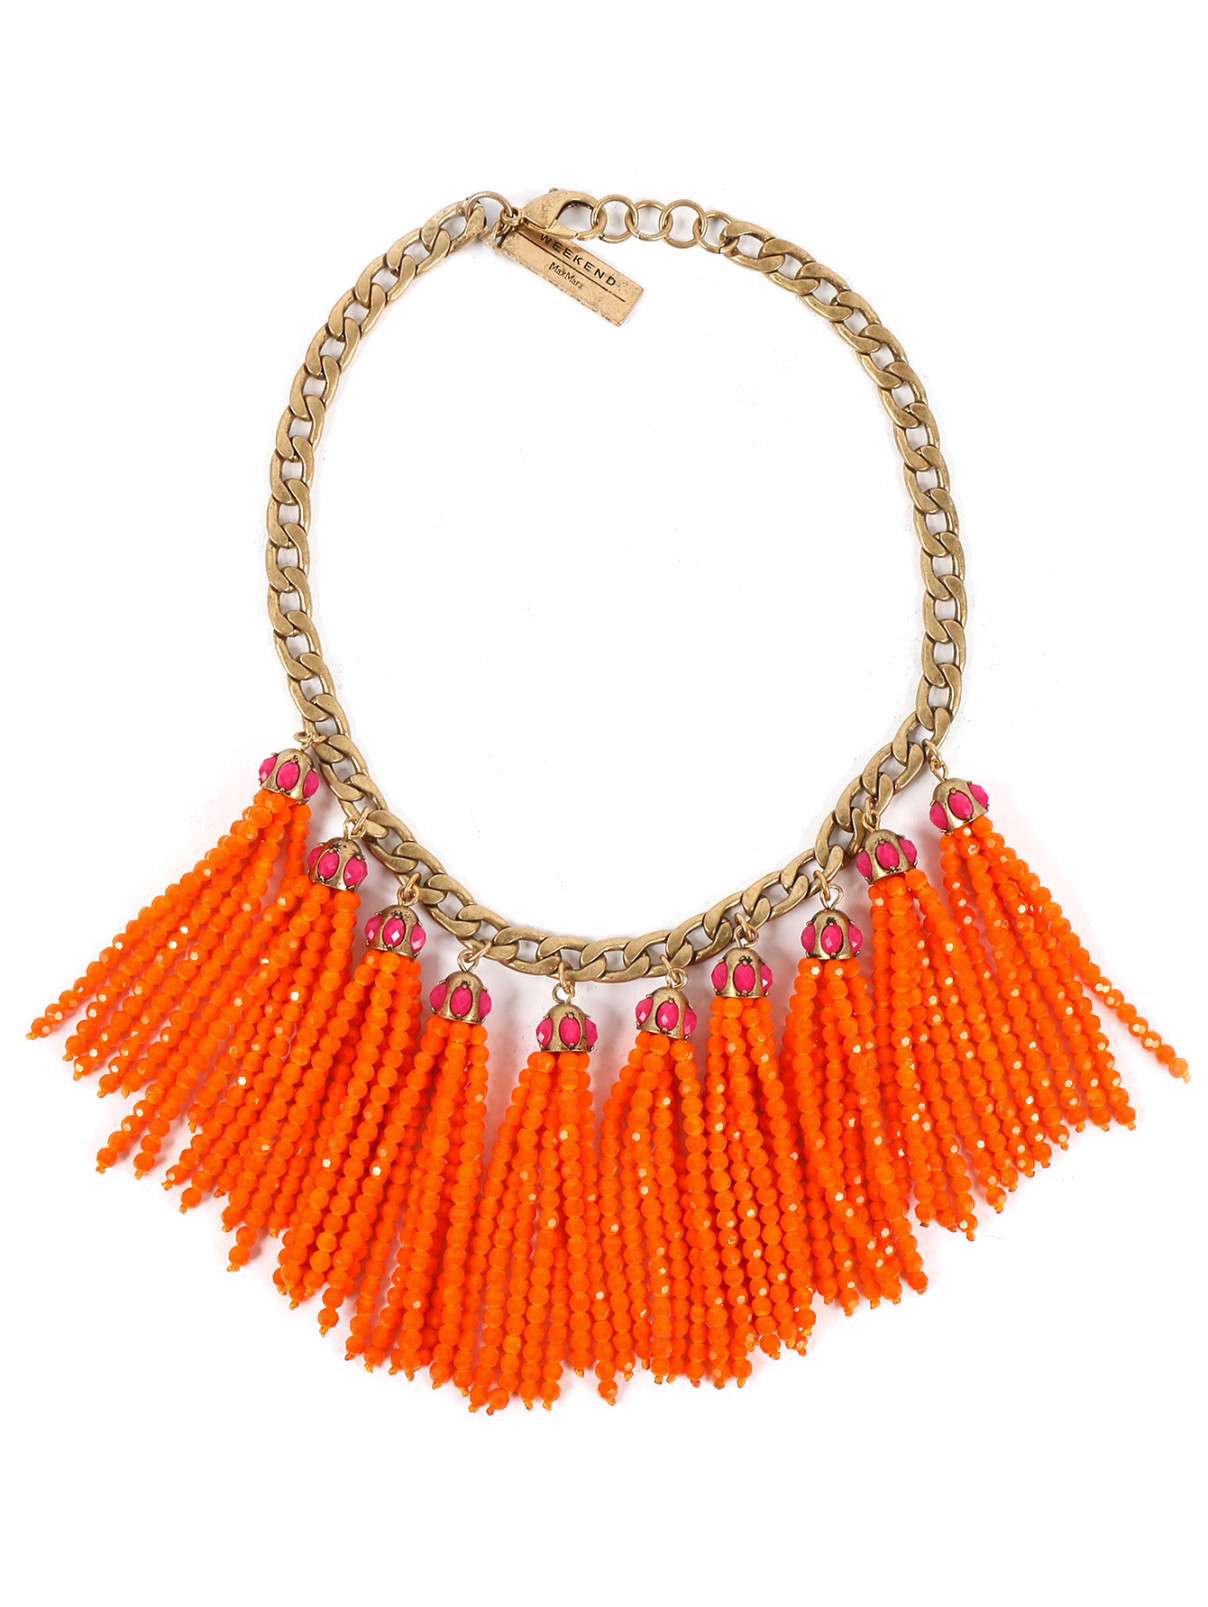 Ожерелье из стекла и металла Weekend Max Mara  –  Общий вид  – Цвет:  Оранжевый